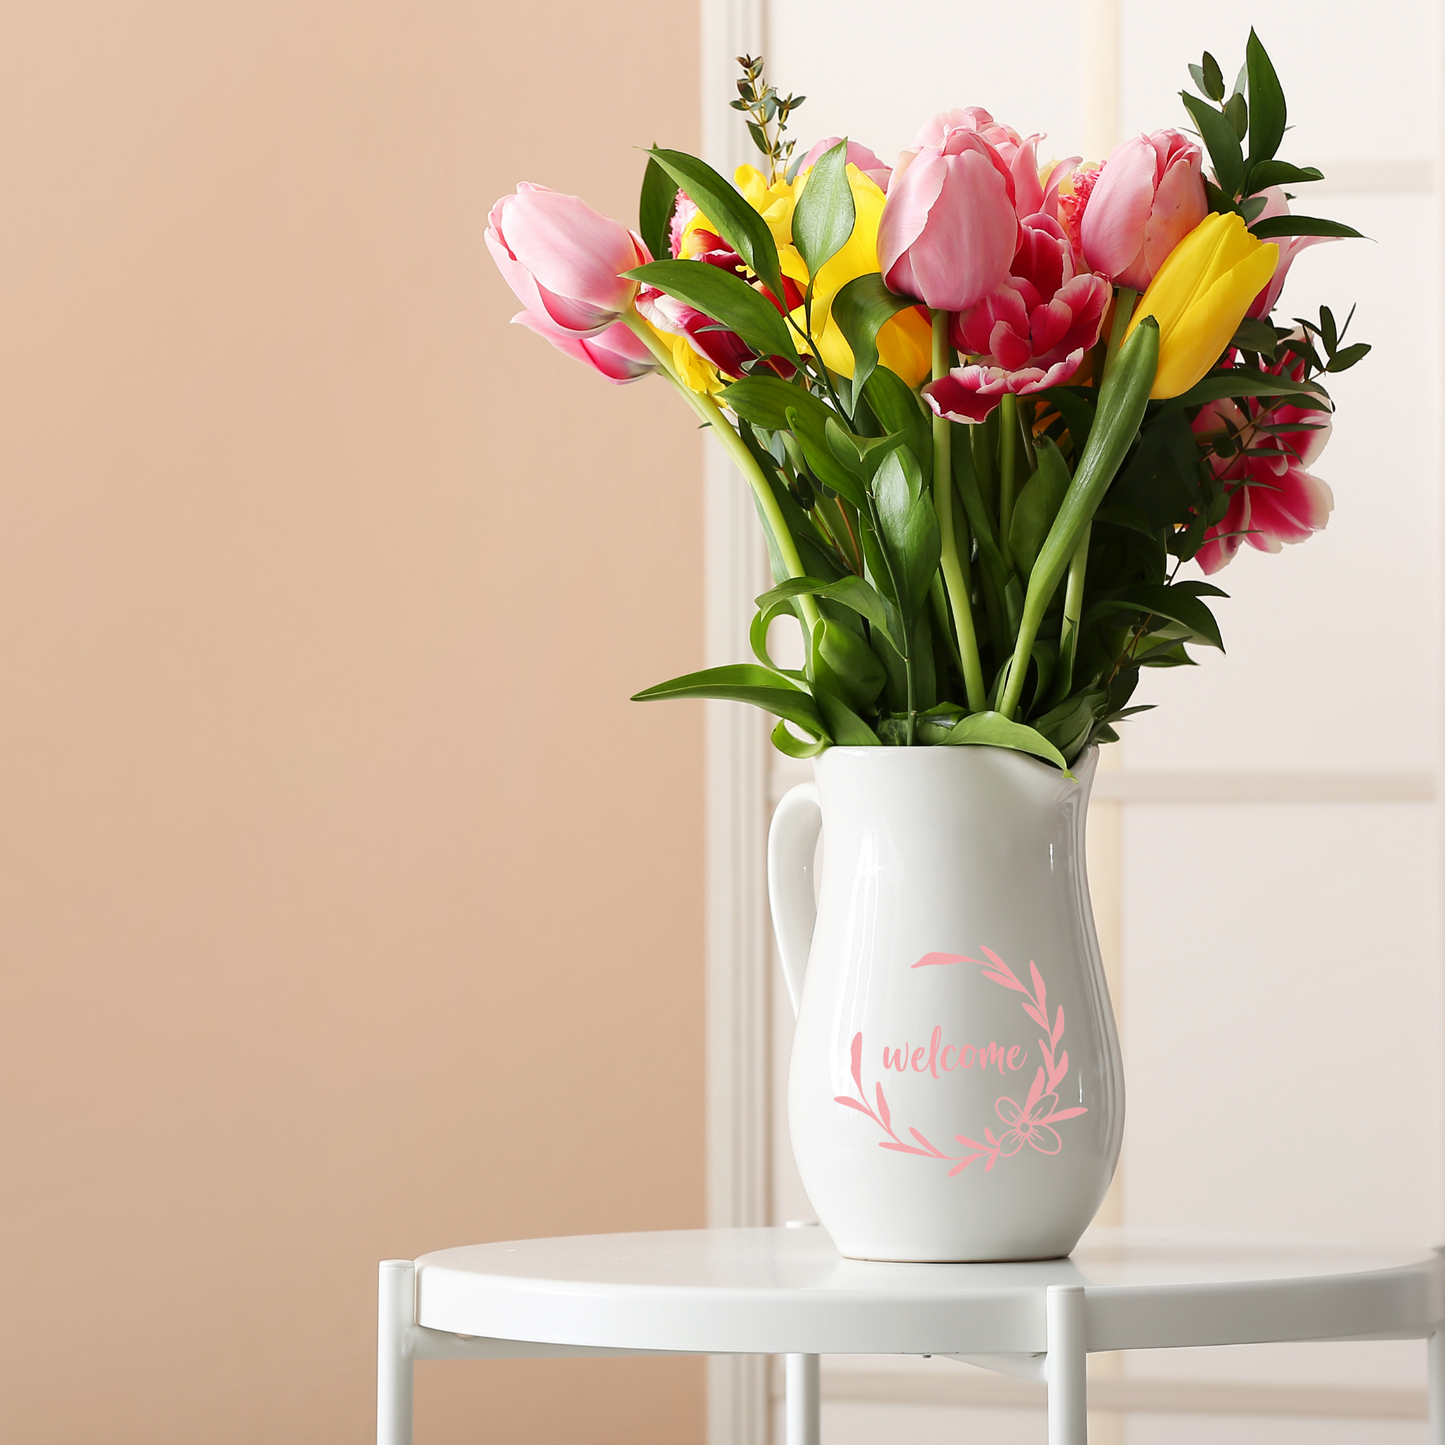 Glassticker Kranz mit Blume, DIY Aufkleber zum dekorieren von Gläsern, Spiegeln, Blumentopf - als Wohndeko und als Geschenk - personalisiert